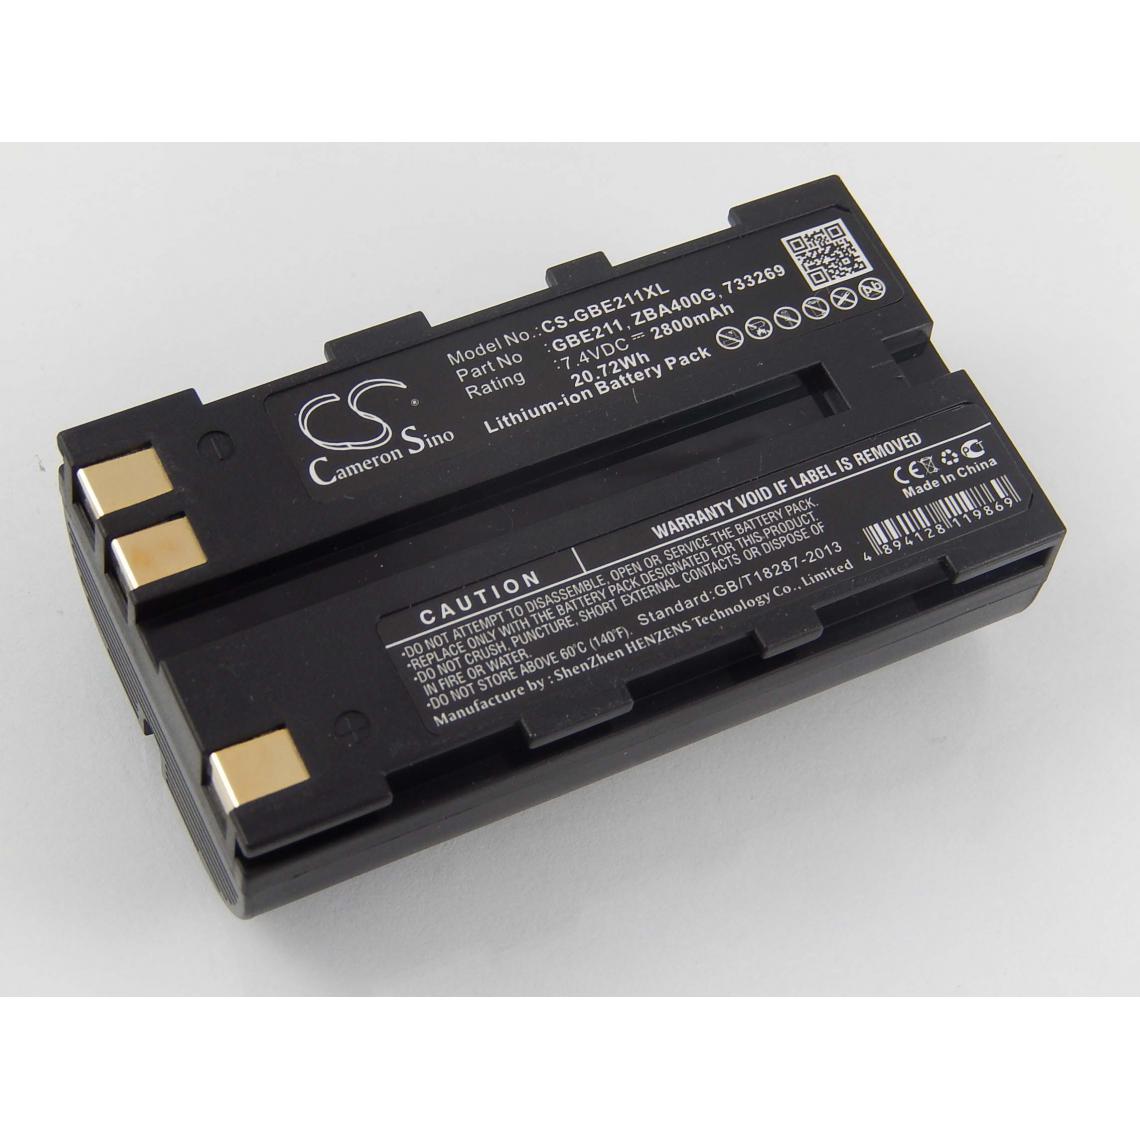 Vhbw - vhbw Batterie compatible avec Leica GS20, RCS1100, RX1200, RX900 dispositif de mesure laser, outil de mesure (2800mAh, 7,4V, Li-ion) - Piles rechargeables